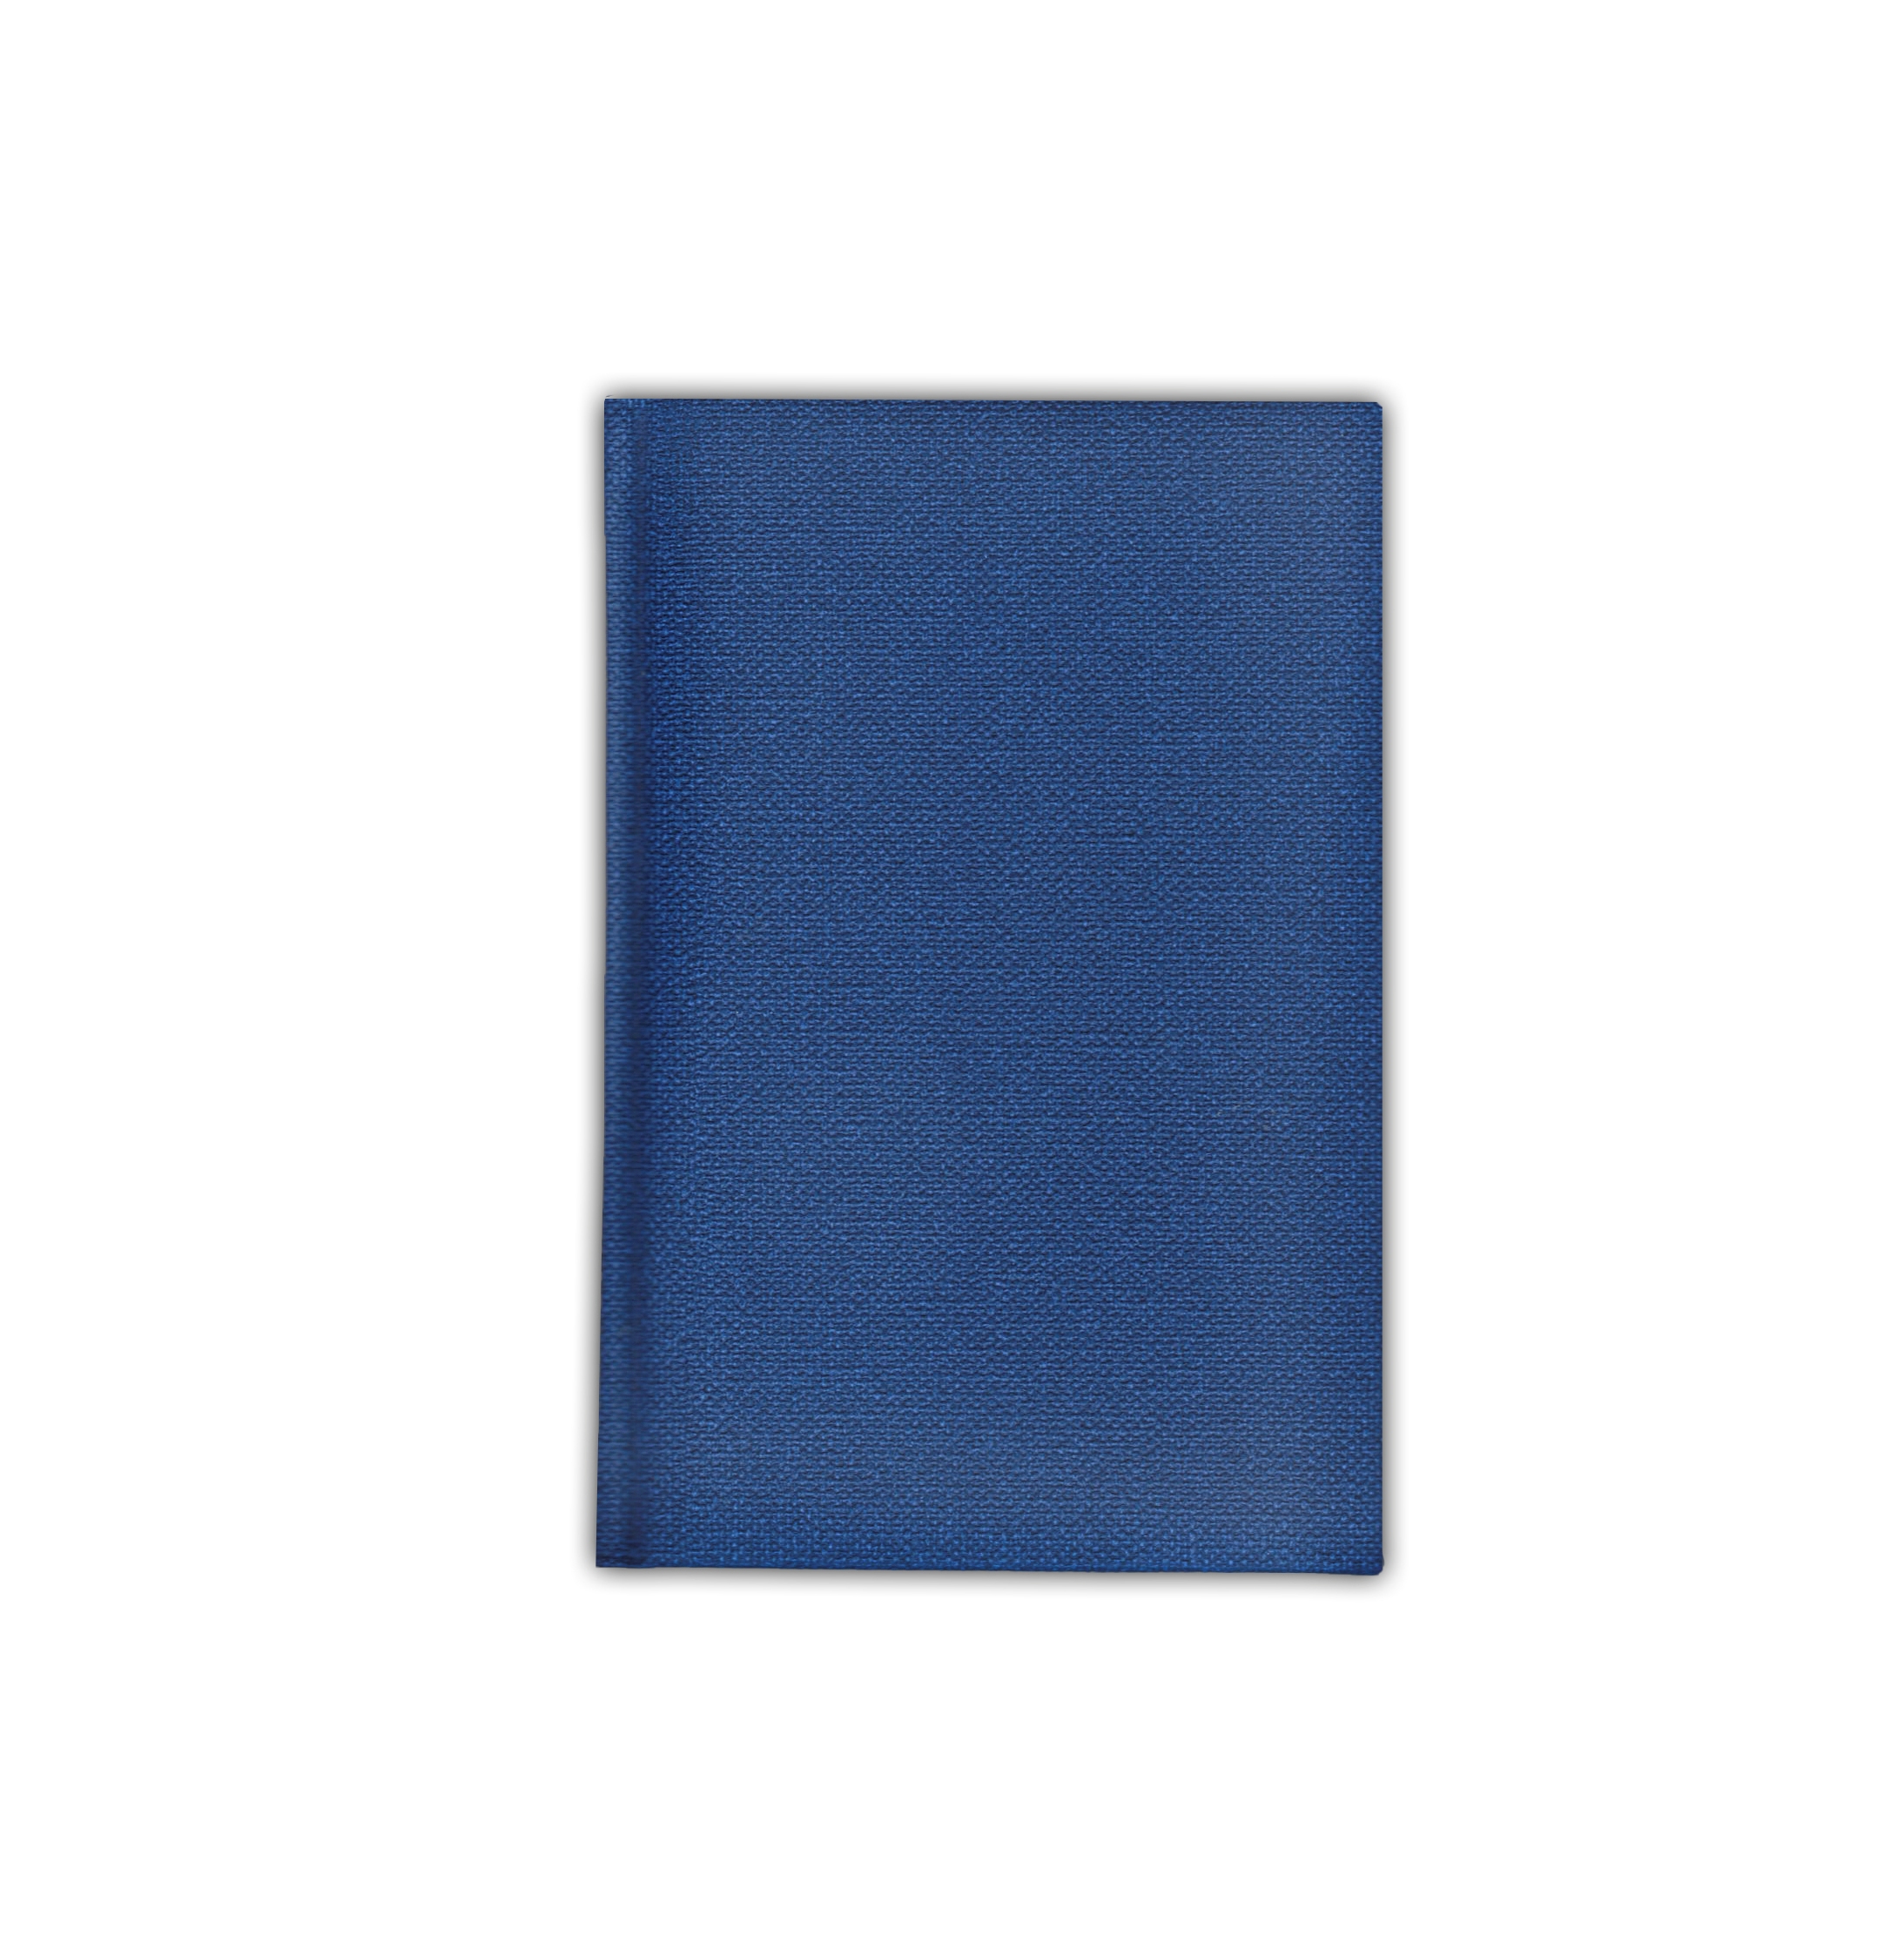 Ежедневник полудатированный V59 11х16,5 см  DELHI синий без среза